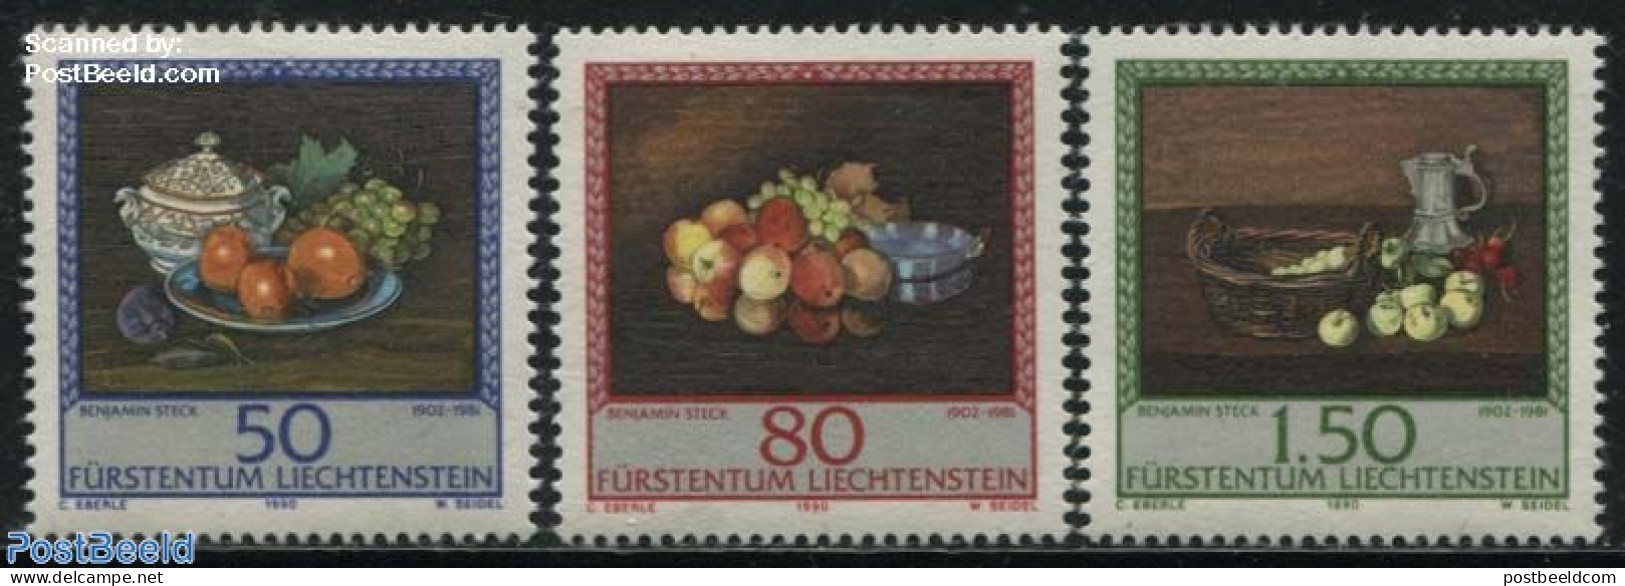 Liechtenstein 1990 Paintings 3v, Mint NH, Nature - Fruit - Art - Paintings - Neufs